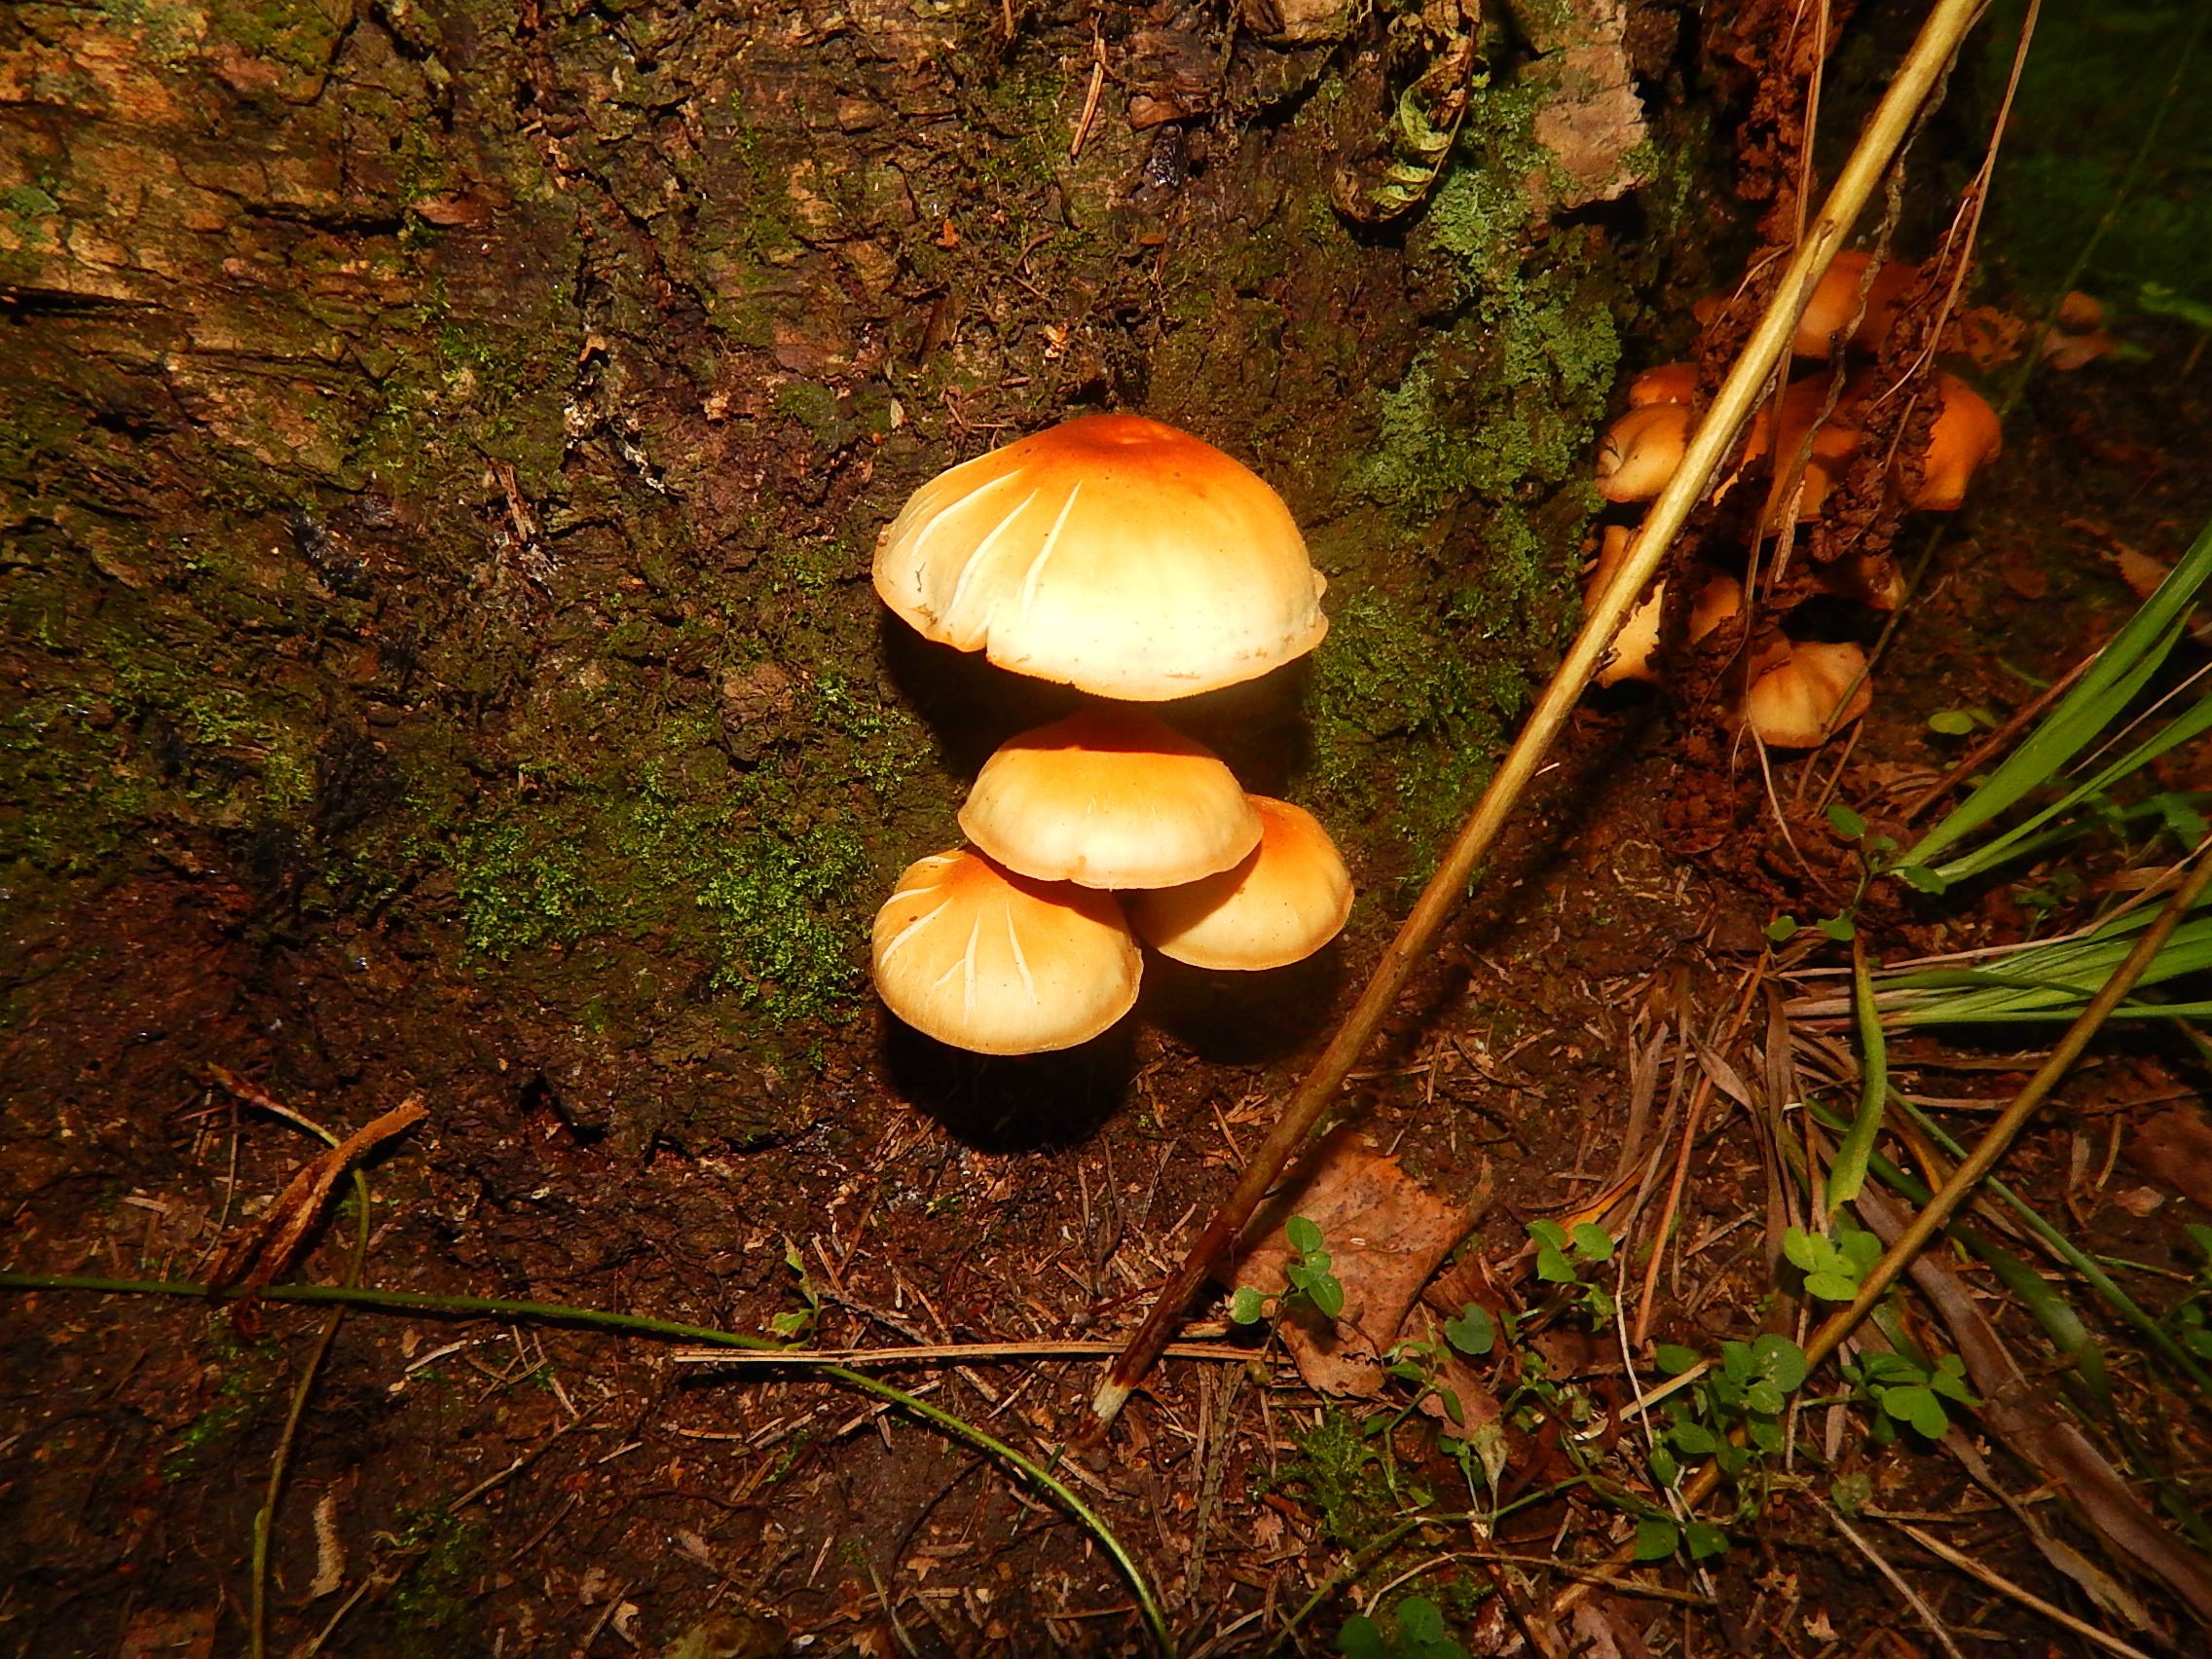 Осенние грибы подмосковья съедобные фото